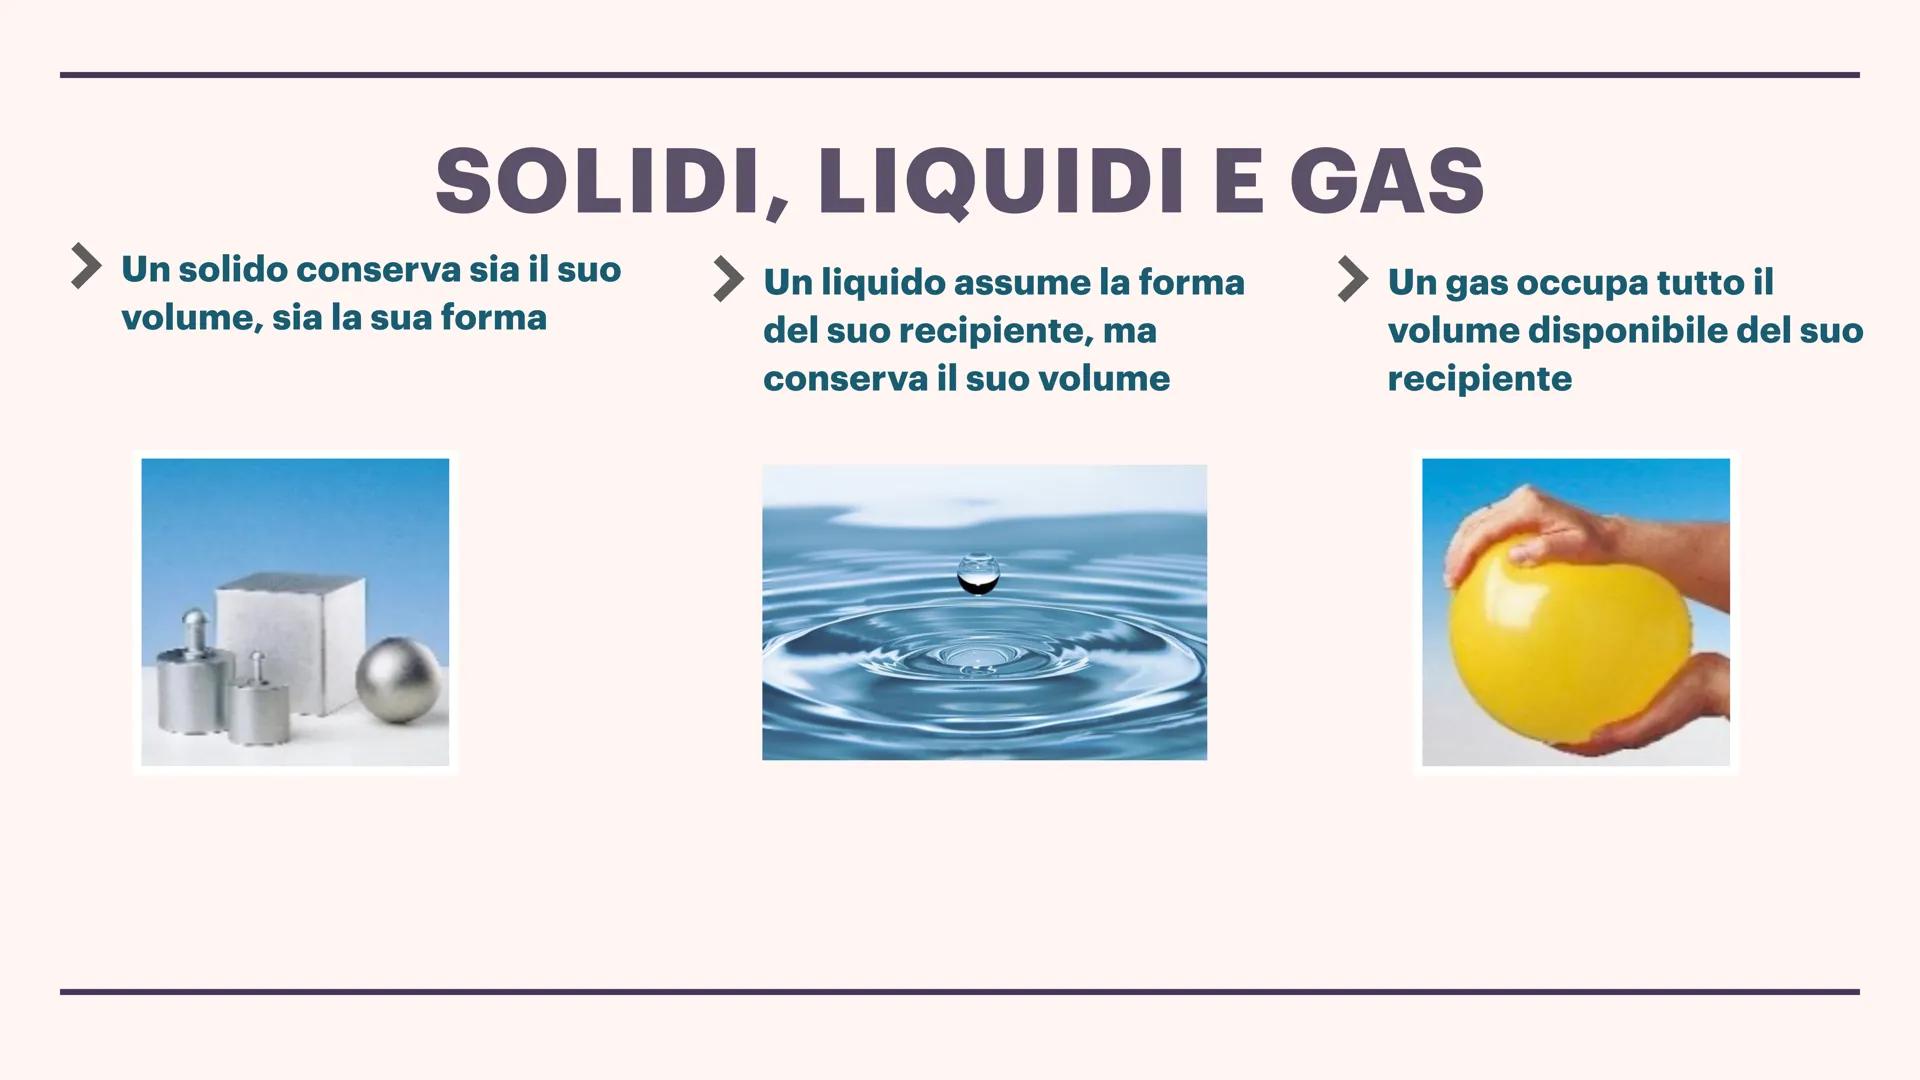 
<p>Rampinelli Gaia</p>
<h2 id="solidiliquidiegas">Solidi, liquidi e gas</h2>
<p>Un solido conserva sia il suo volume, sia la sua forma. Un 